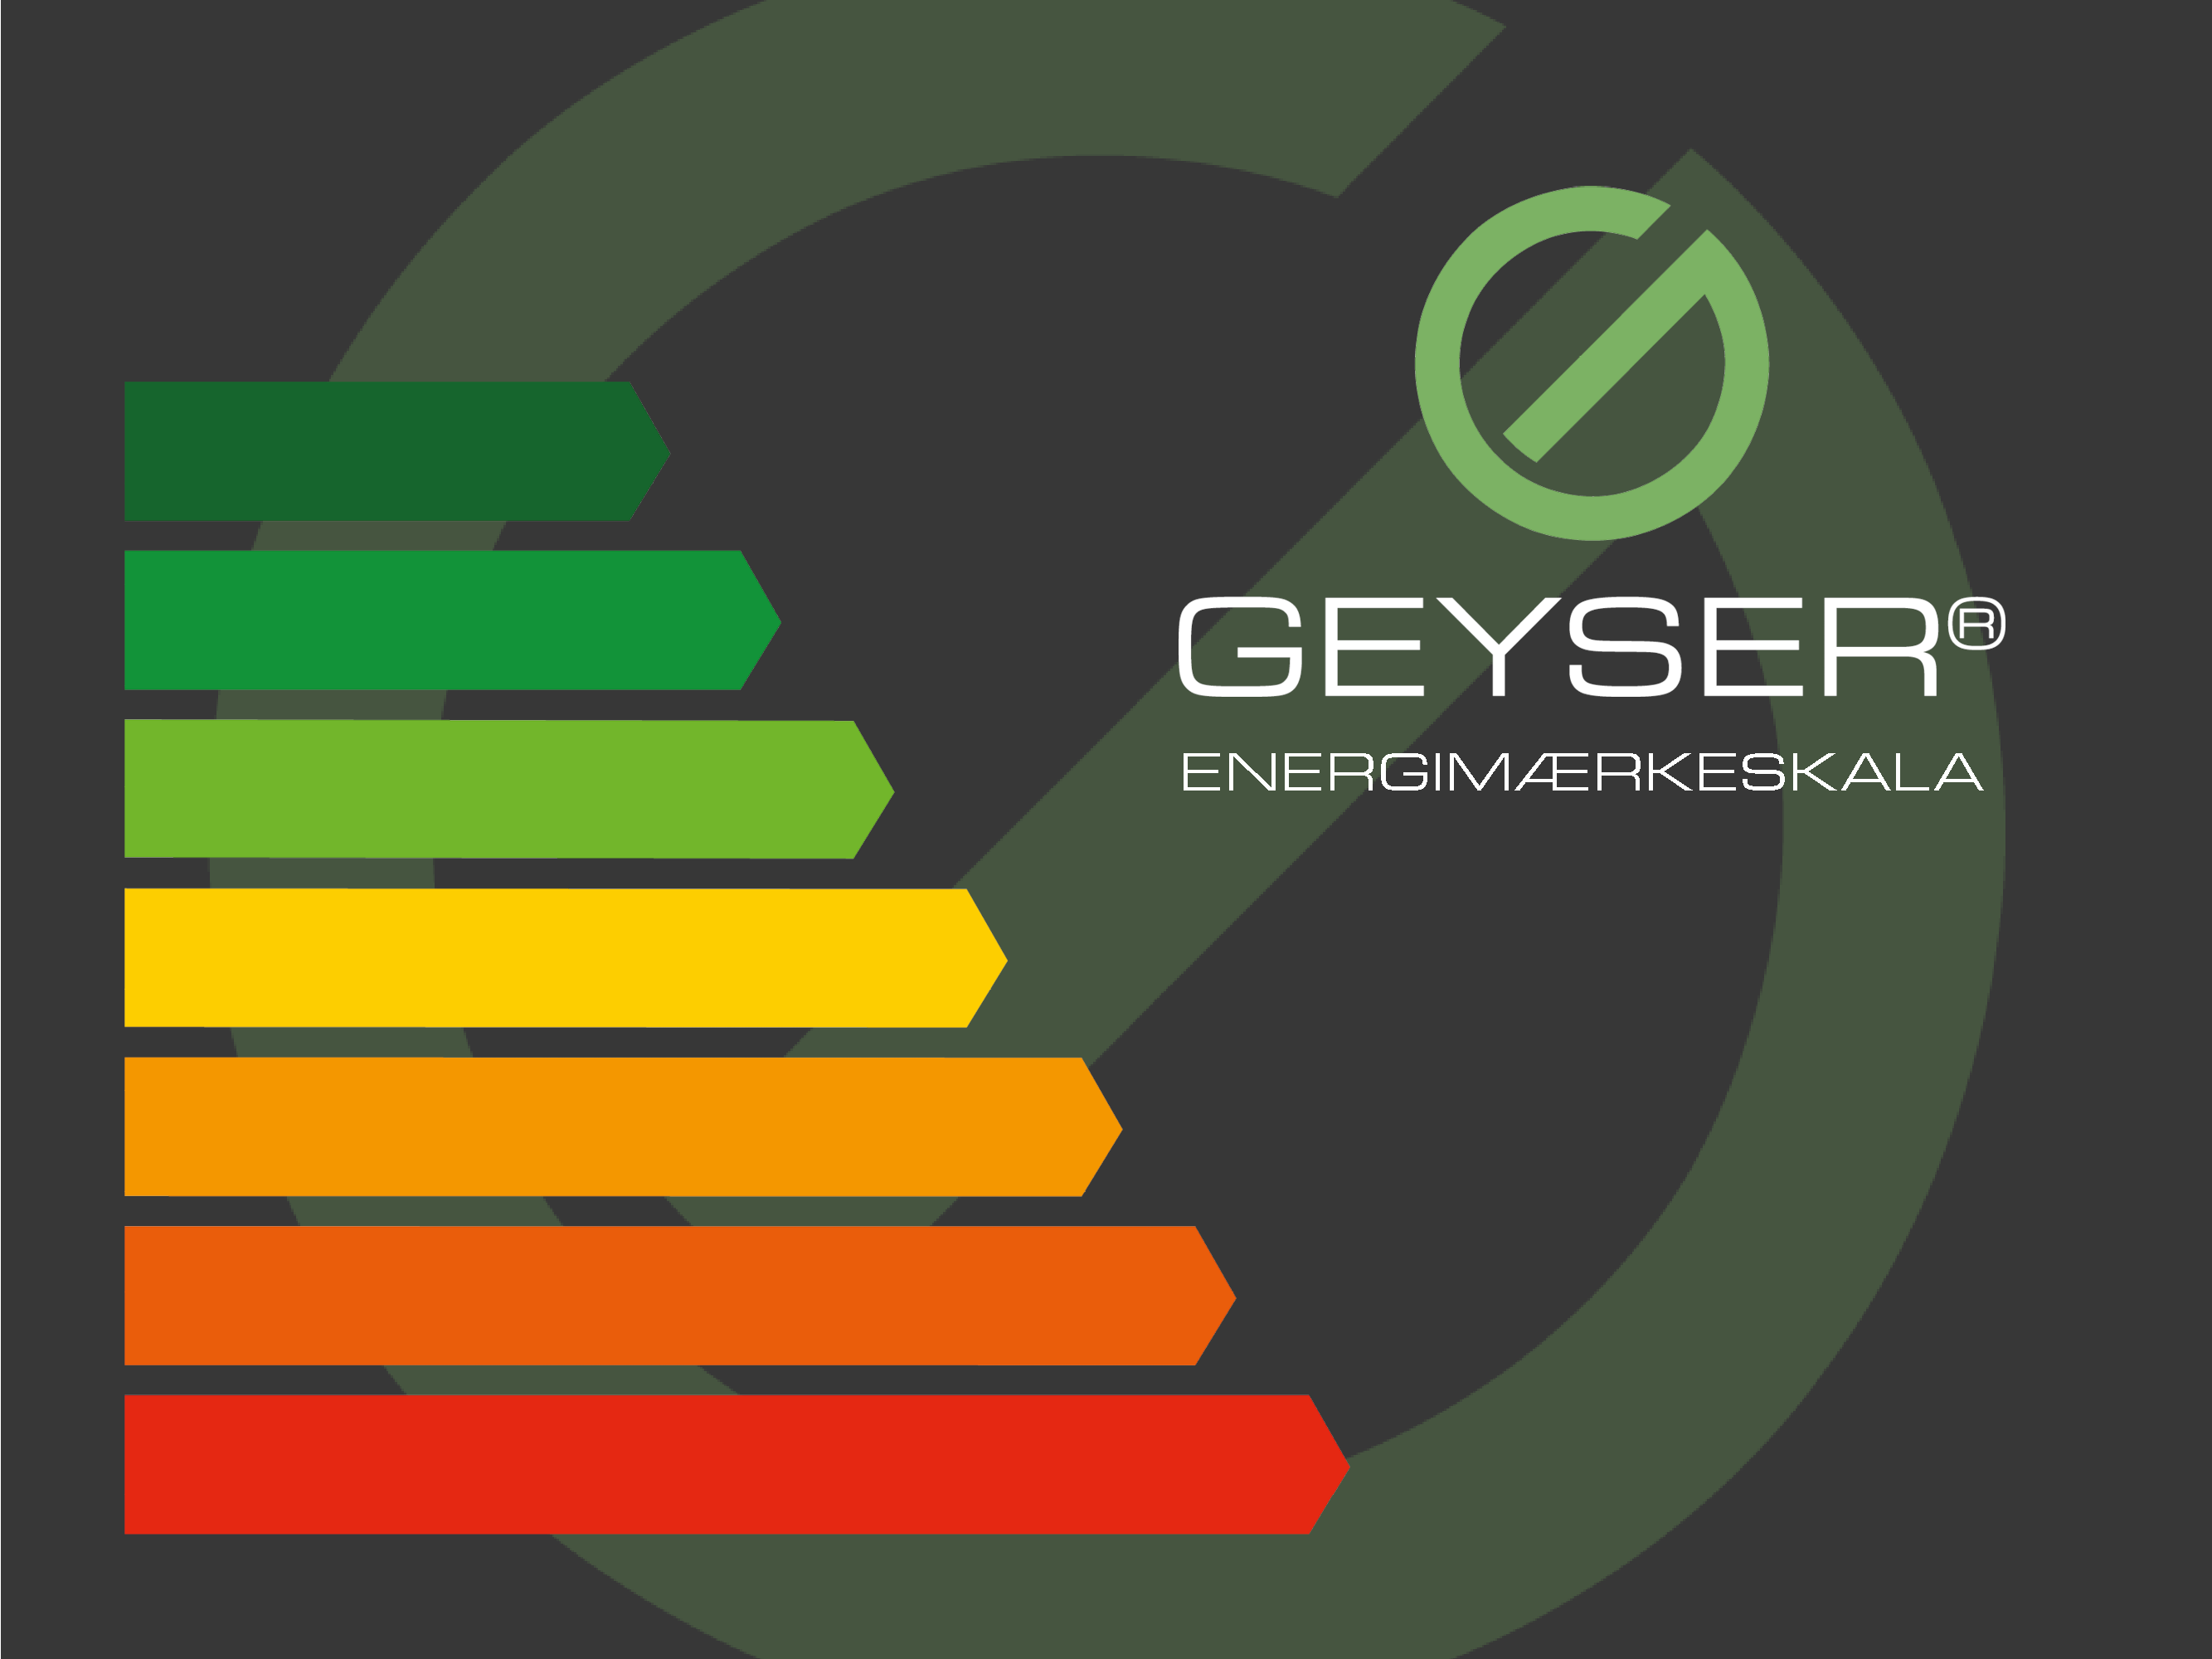 GEYSER® gør det let at være miljøbevidst forbruger.